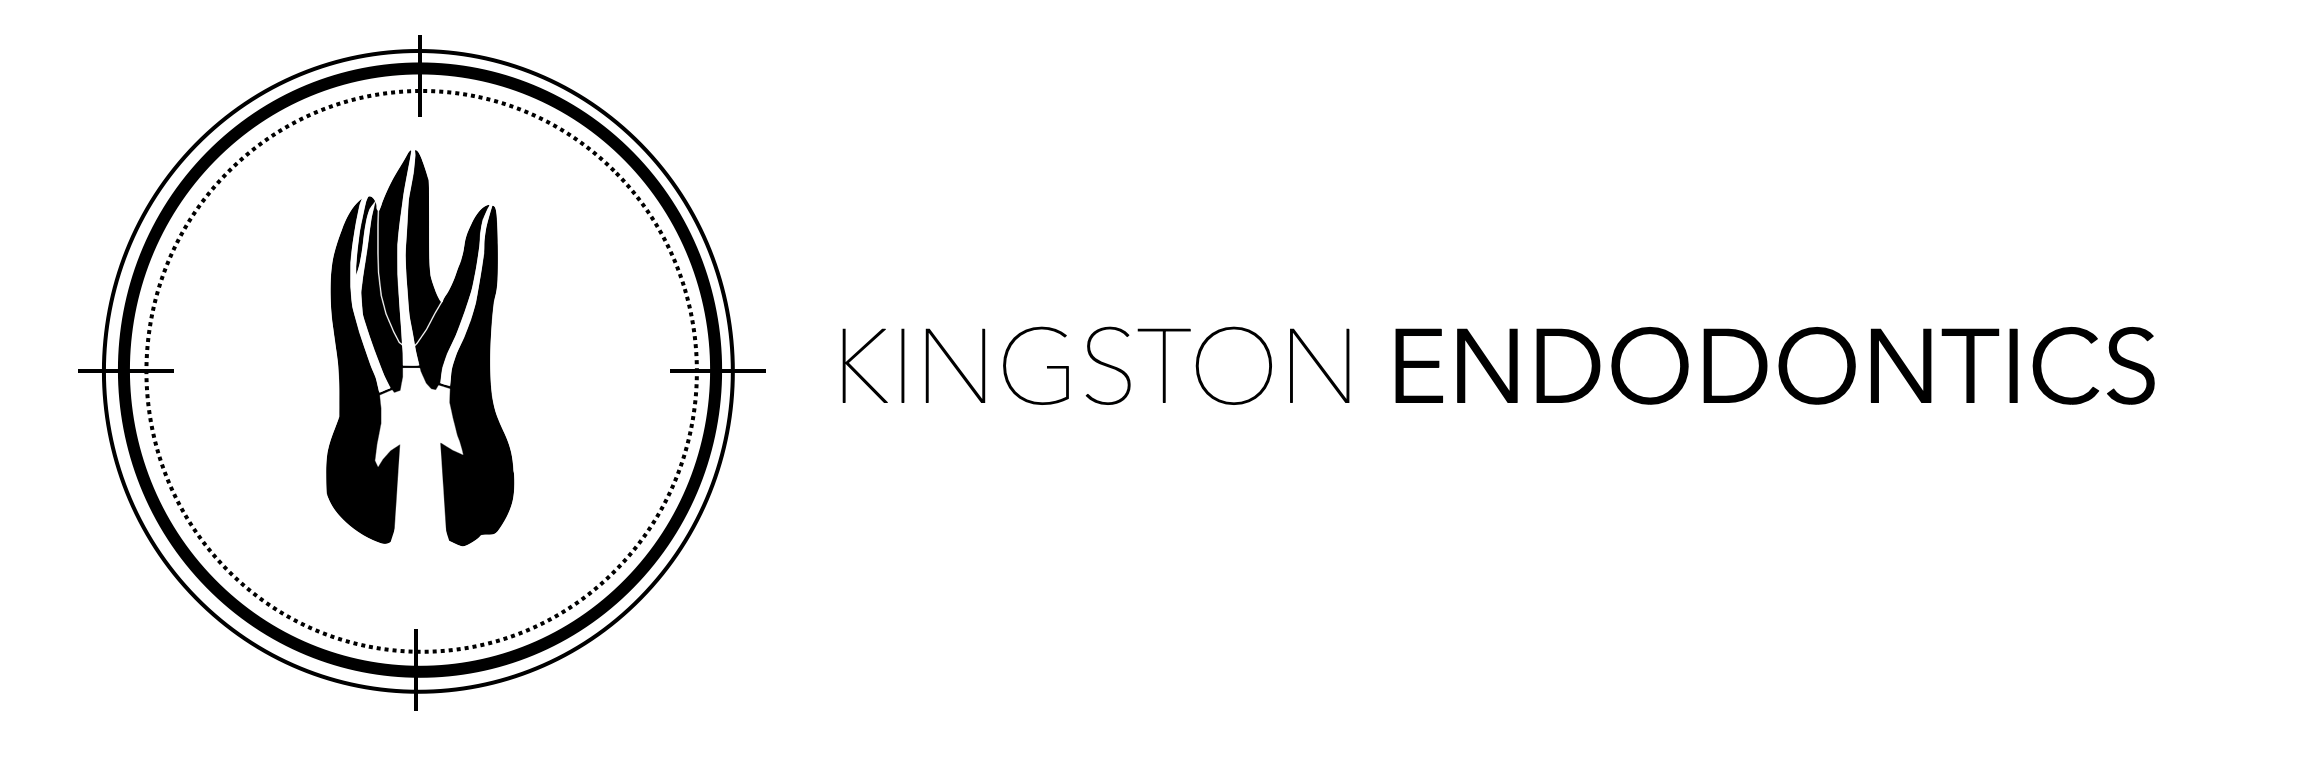 Kingston Endodontics